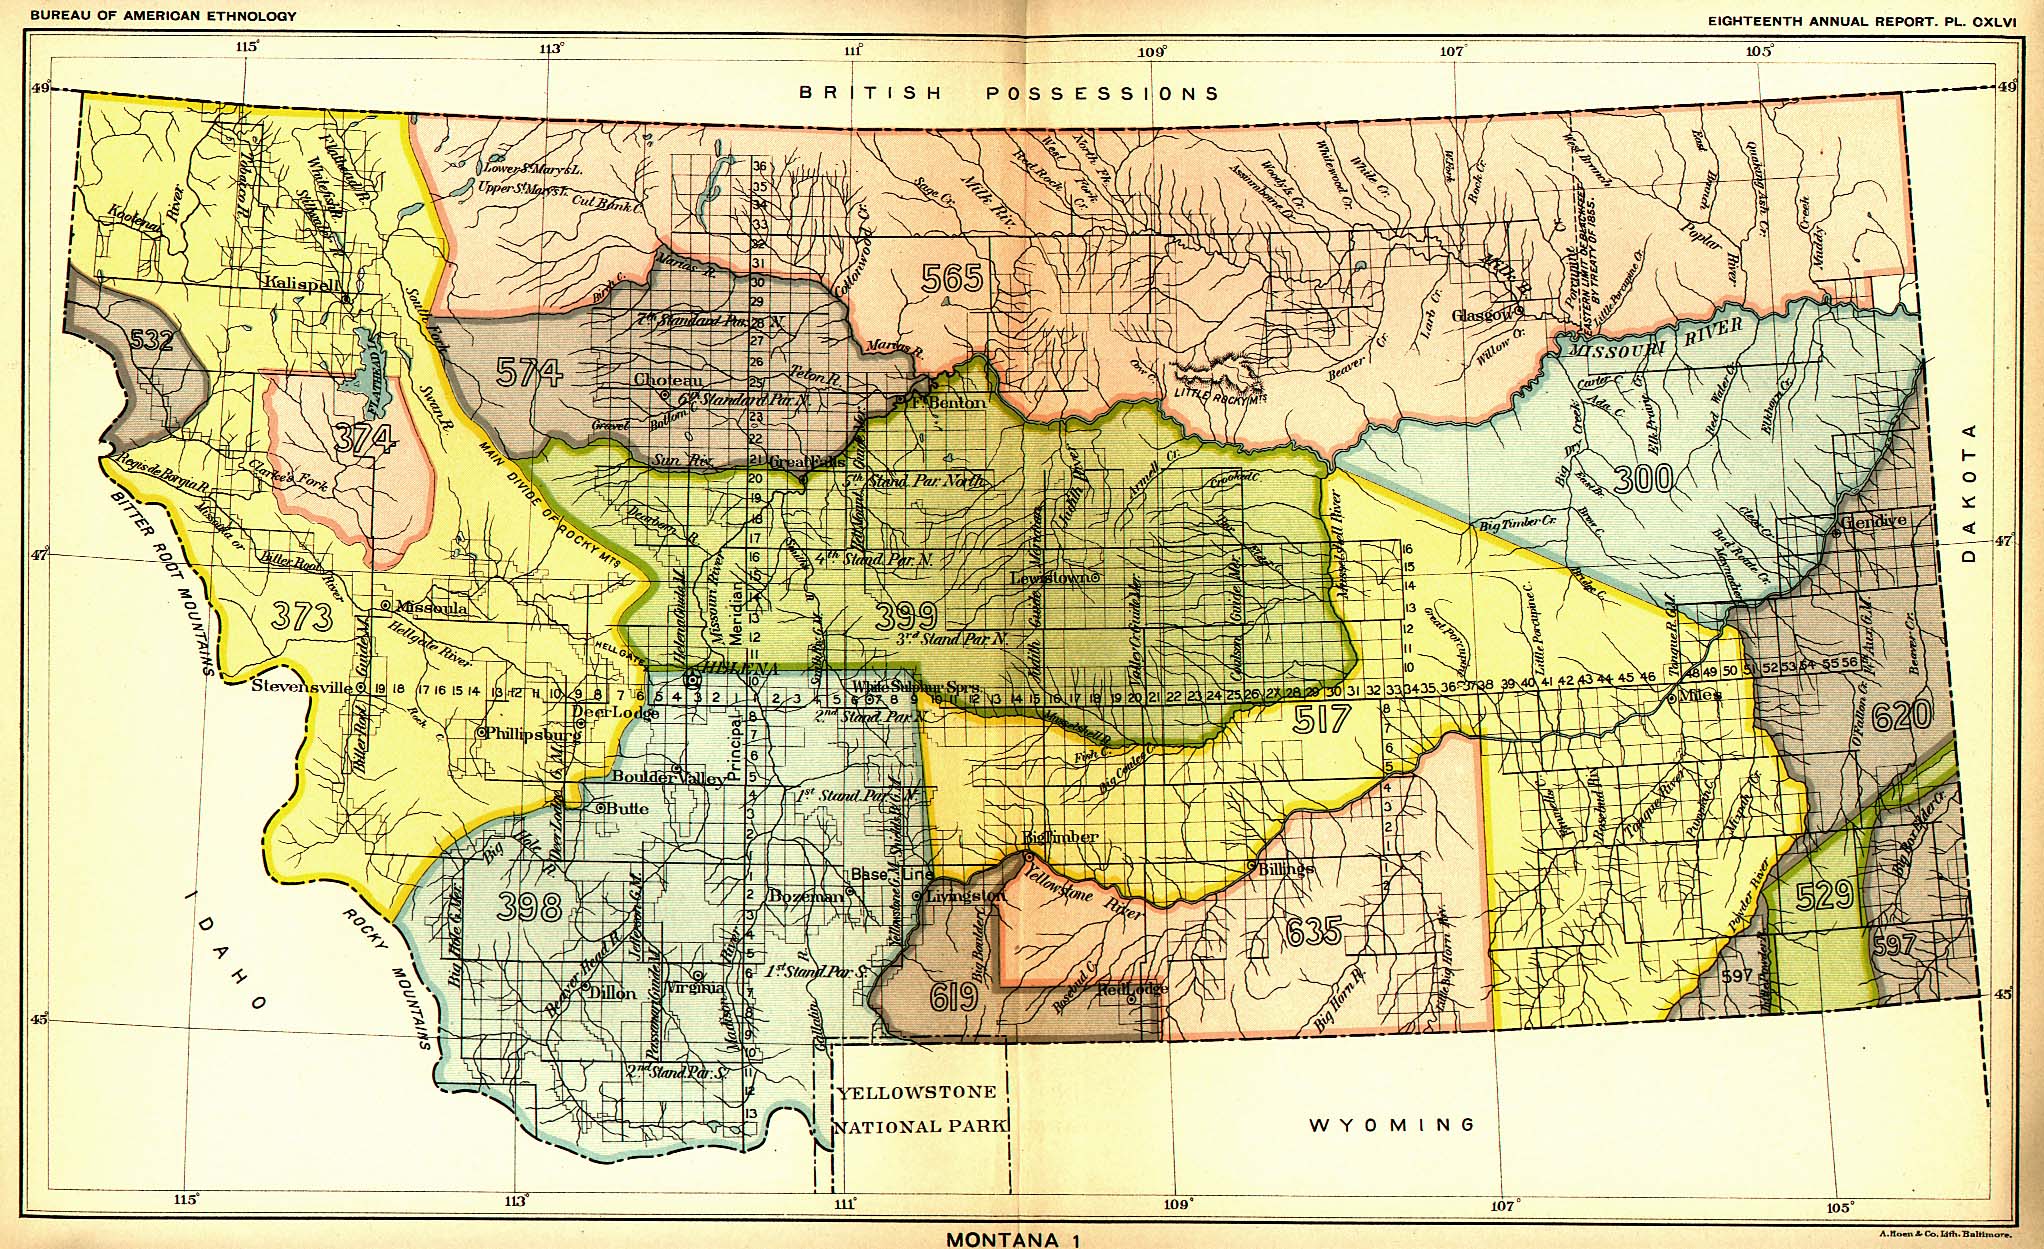 Montana 1, Map 39